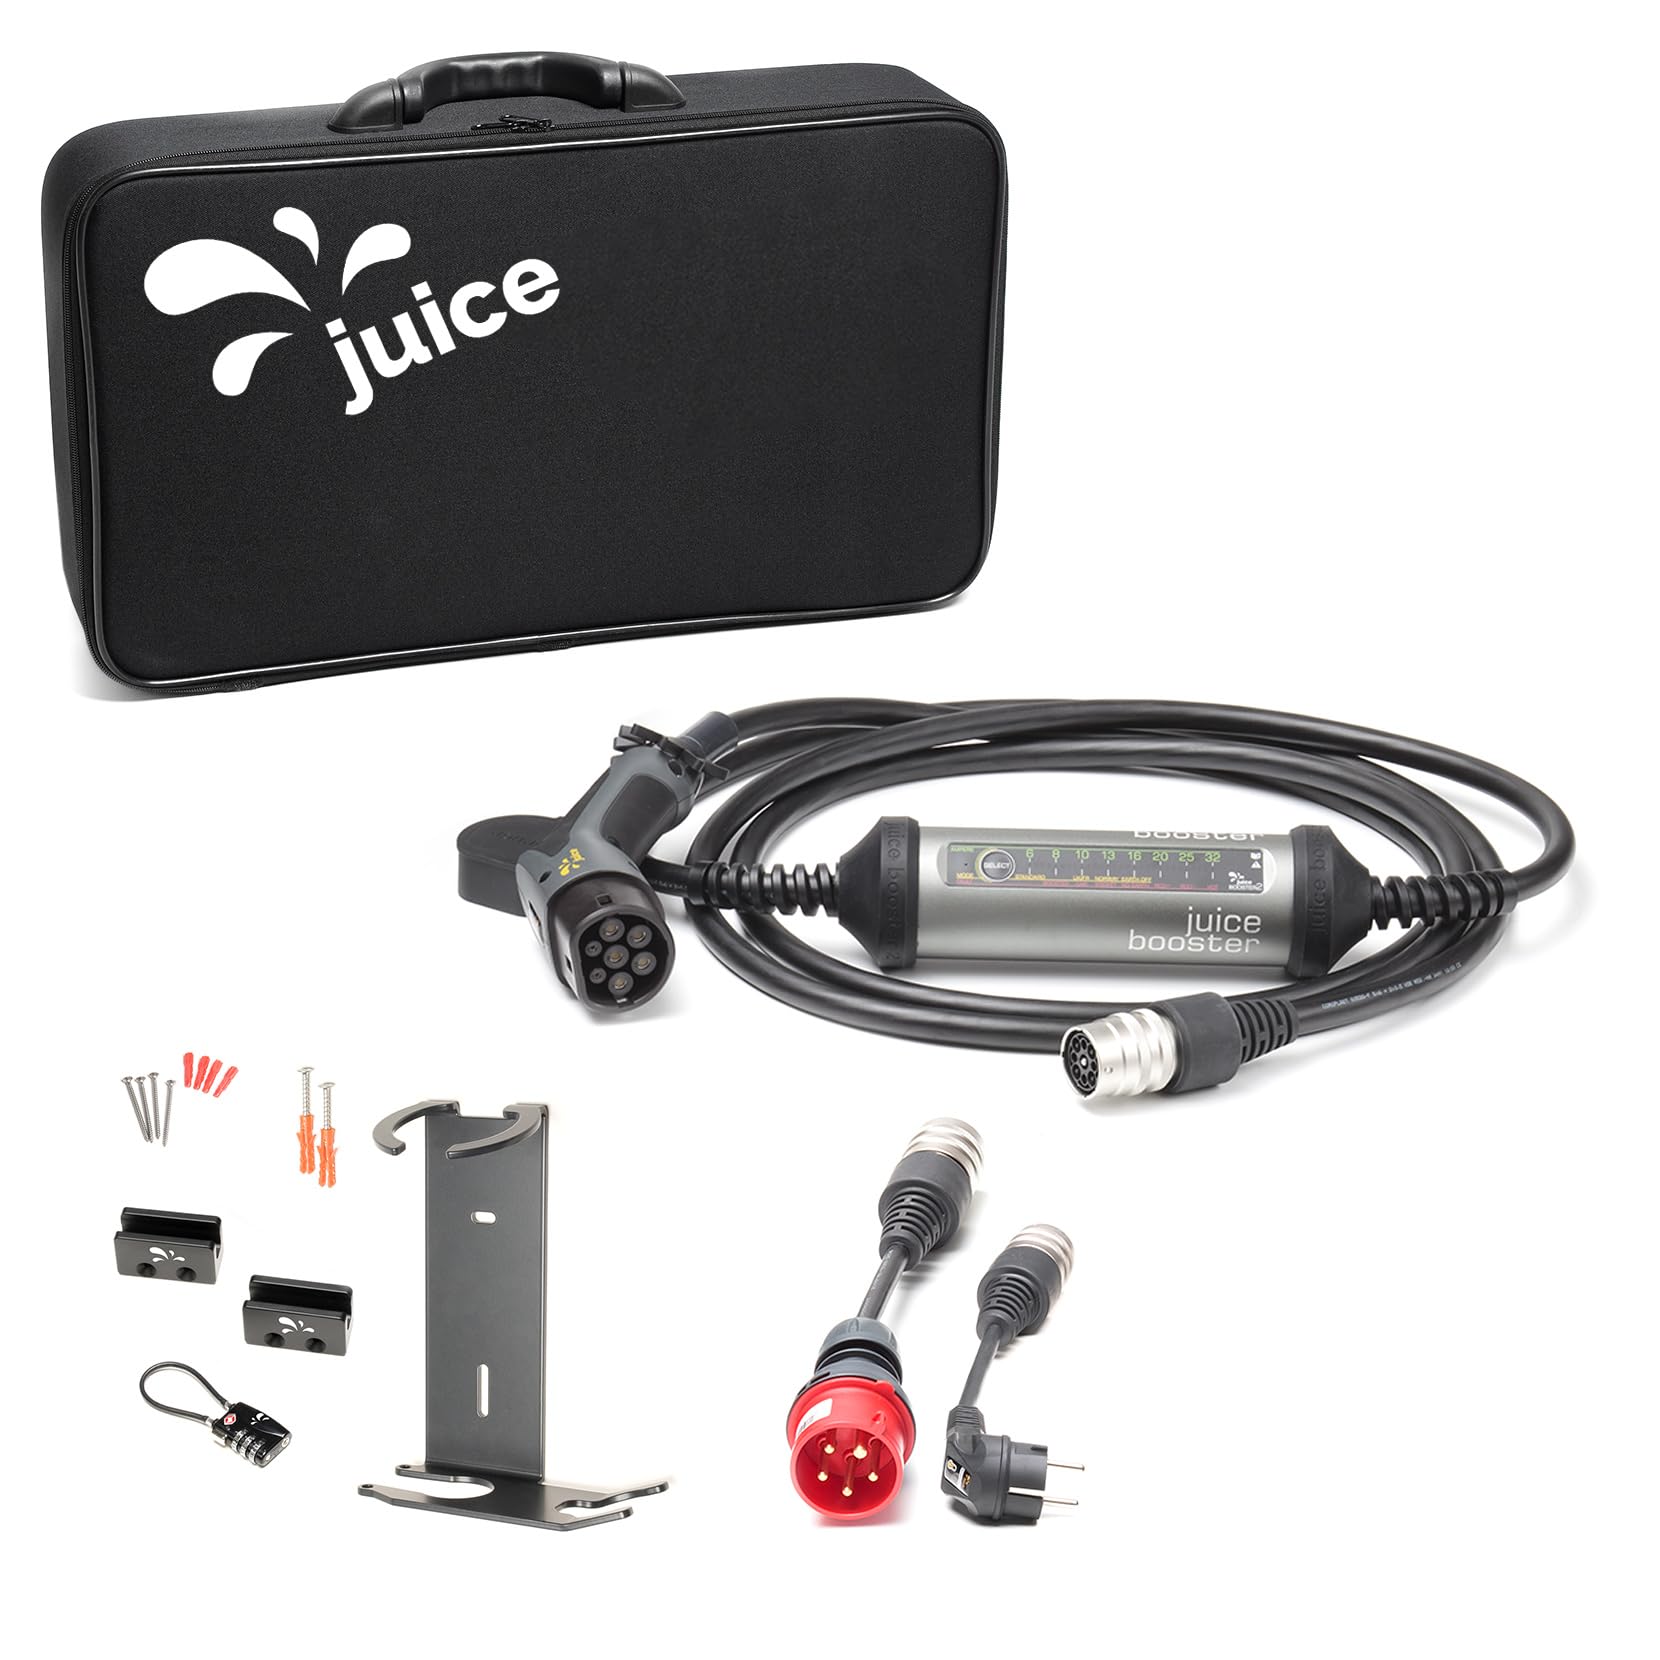 Juice Booster 2 Wallbox Set EU, Mobile Wallbox 22kW Installationsfrei, Ladegerät für BEV mit Typ 2 Ladekabel, Leicht & Flexibel, IP67, Inkl. Adapter CEE16 Rot 3-Phasig + EU Schuko + Wandhalterung